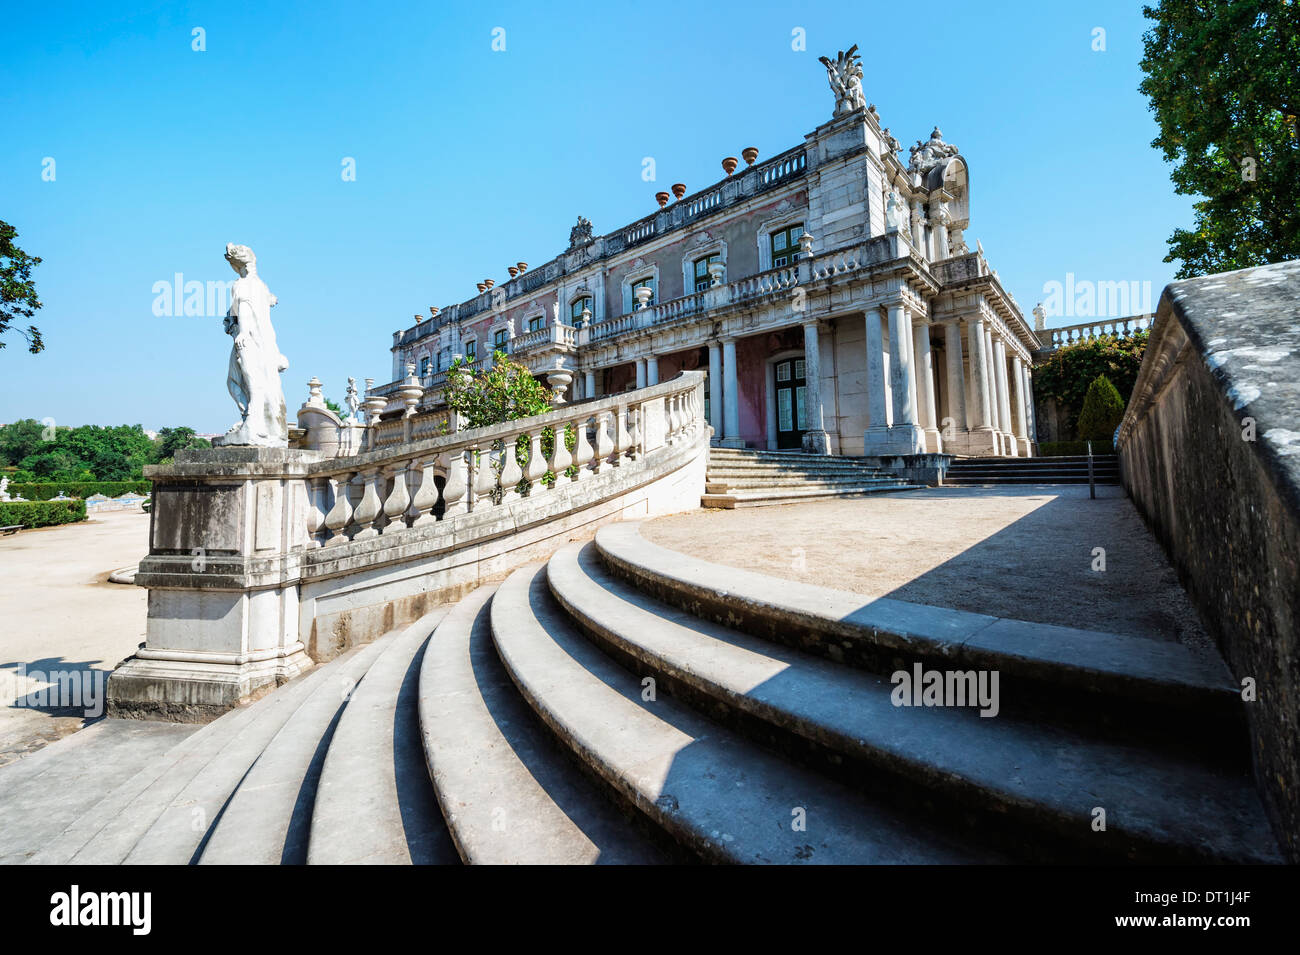 Robilion, Pavillon d'été Royal Palais de Queluz, Lisbonne, Portugal, Europe Banque D'Images